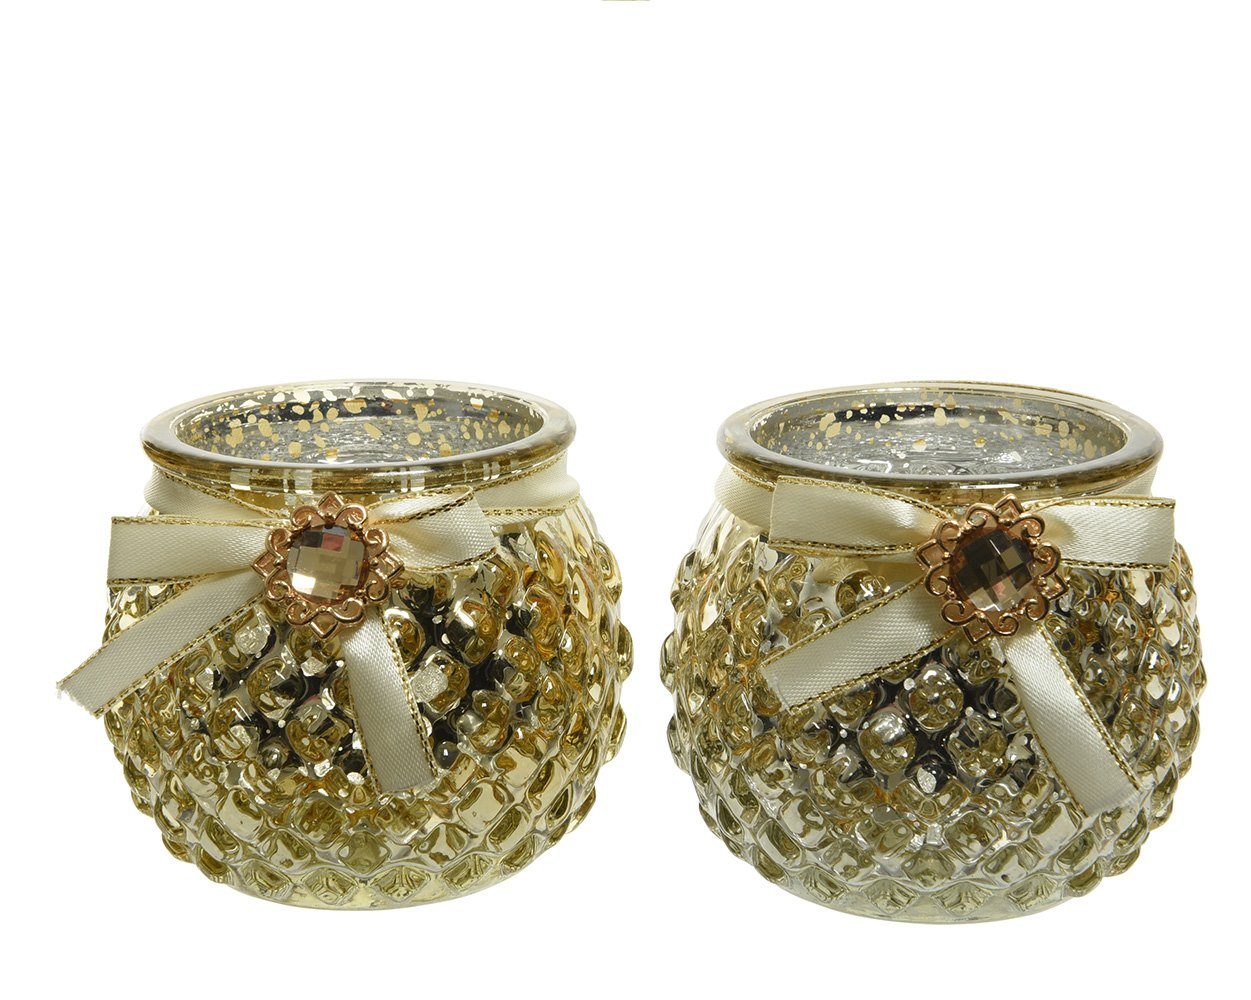 Decoris season decorations Teelichthalter, Teelichthalter Glas mit Schleife / Strass 7cm hellgold, 1 Stück sort.